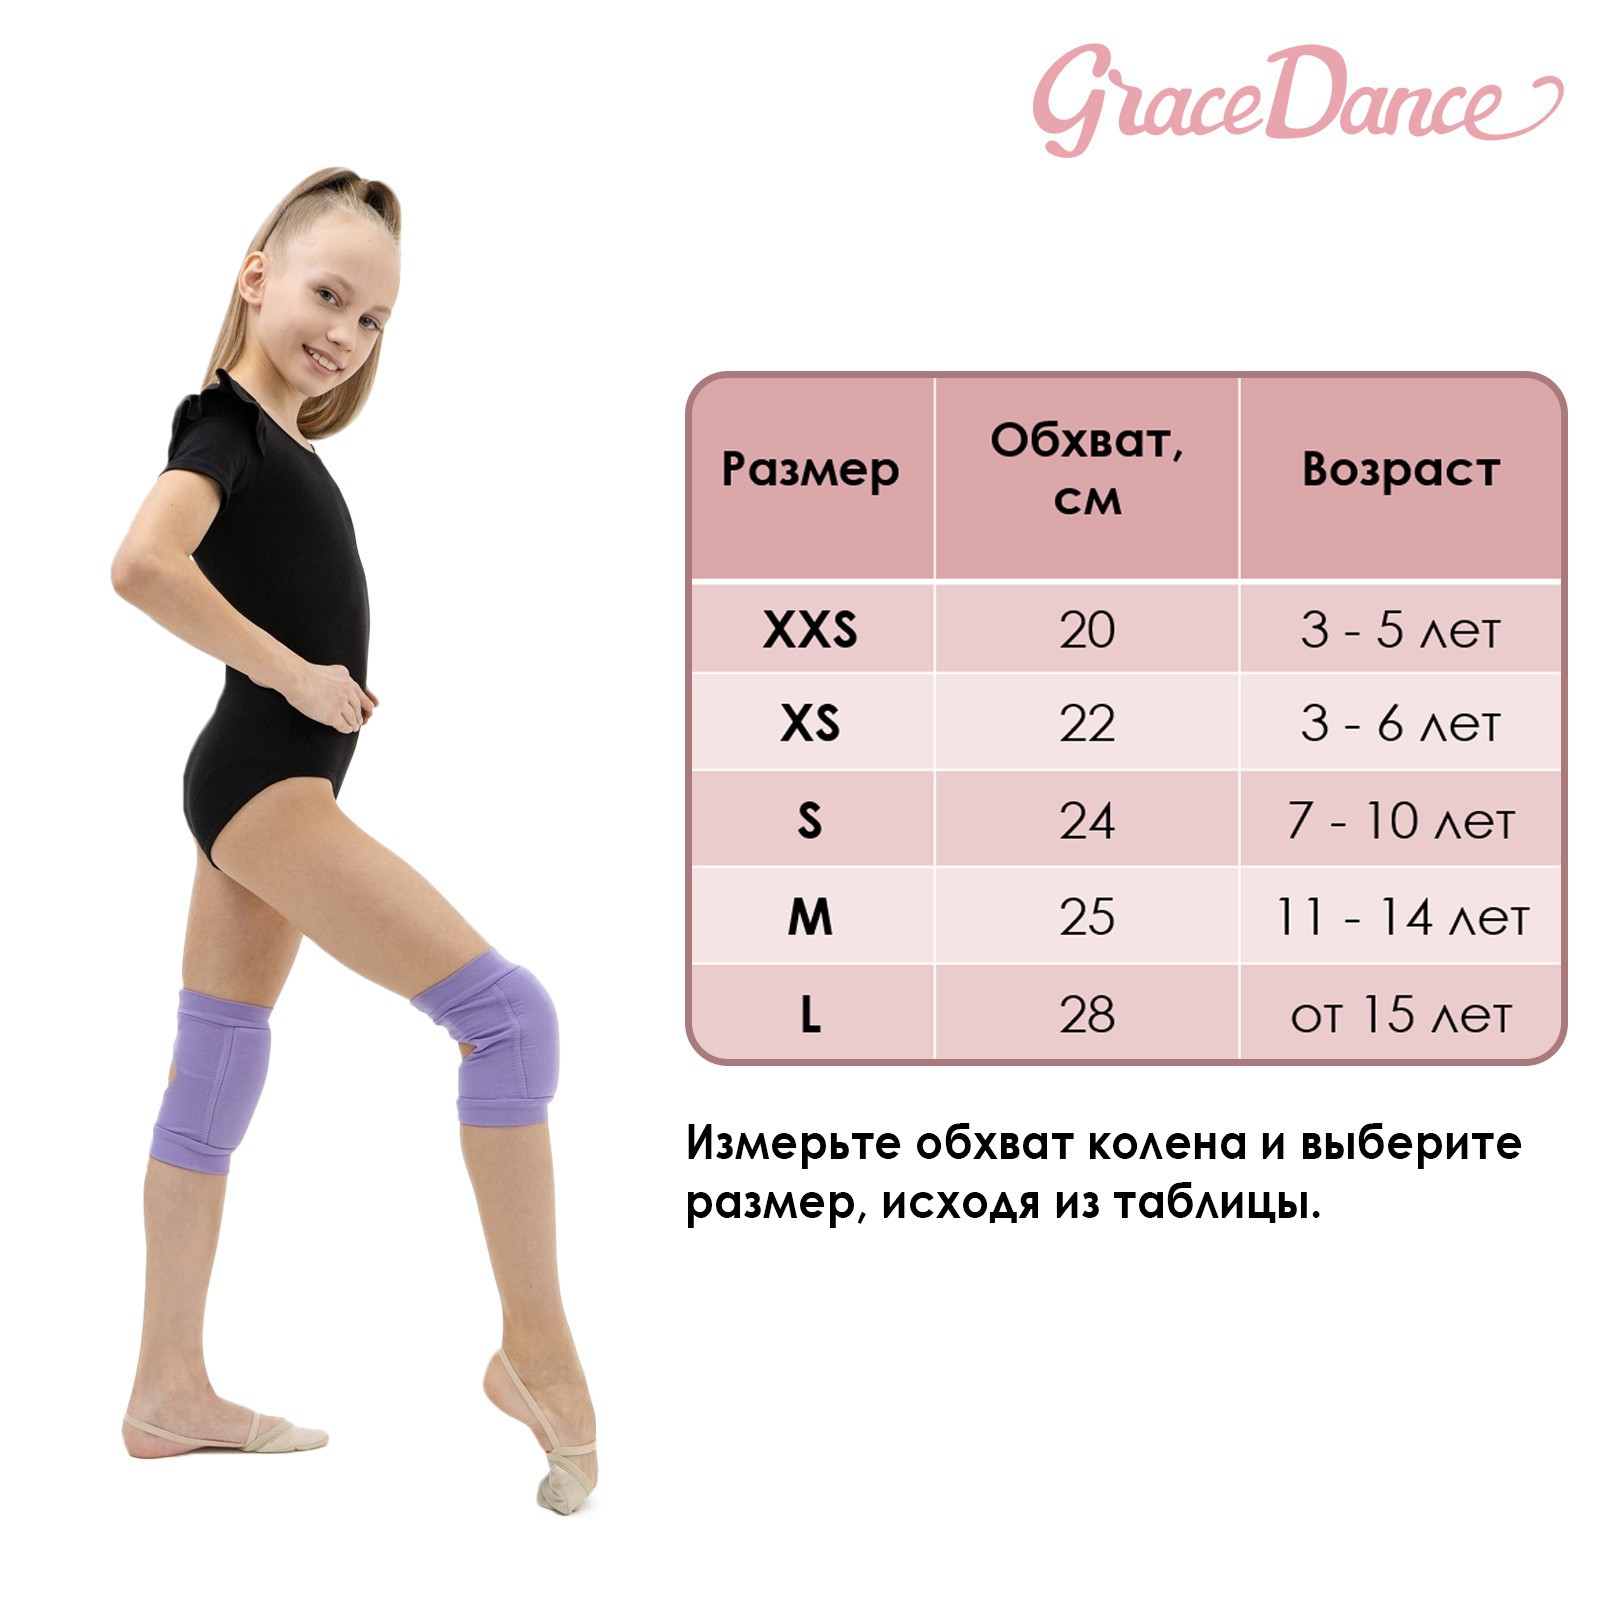 Наколенник Grace Dance для гимнастики и танцев с уплотнителем. размер S. 7-10 лет. цвет фуксия - фото 10